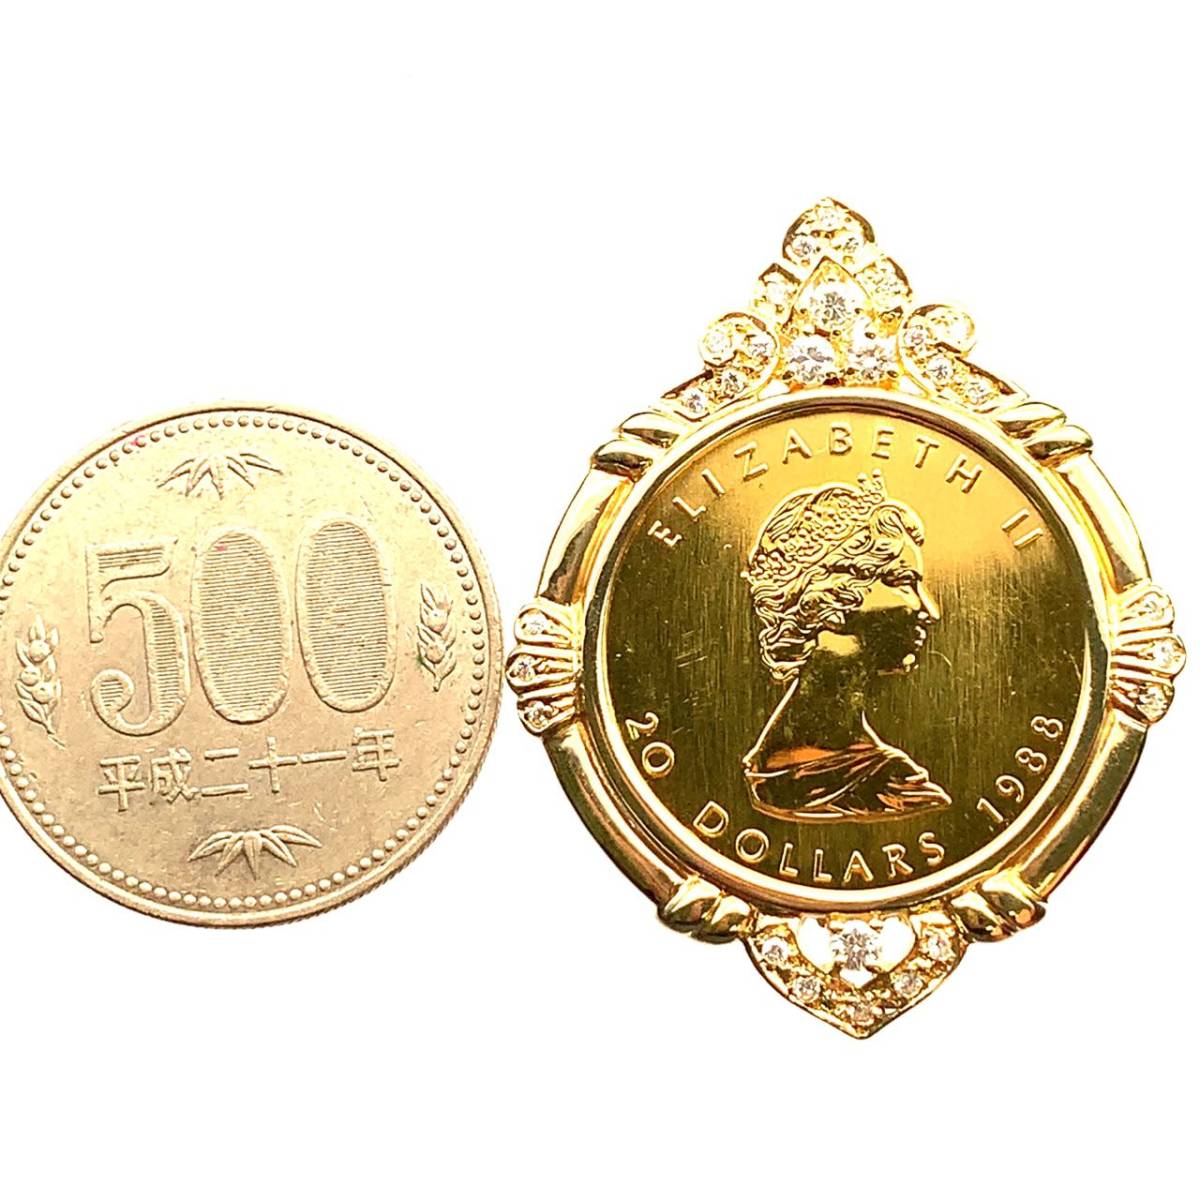 メープル金貨 カナダ エリザベス女王 1988年 K18/24 20.7g 1/2オンス ダイヤモンド コイン ペンダントトップ コレクション_画像4